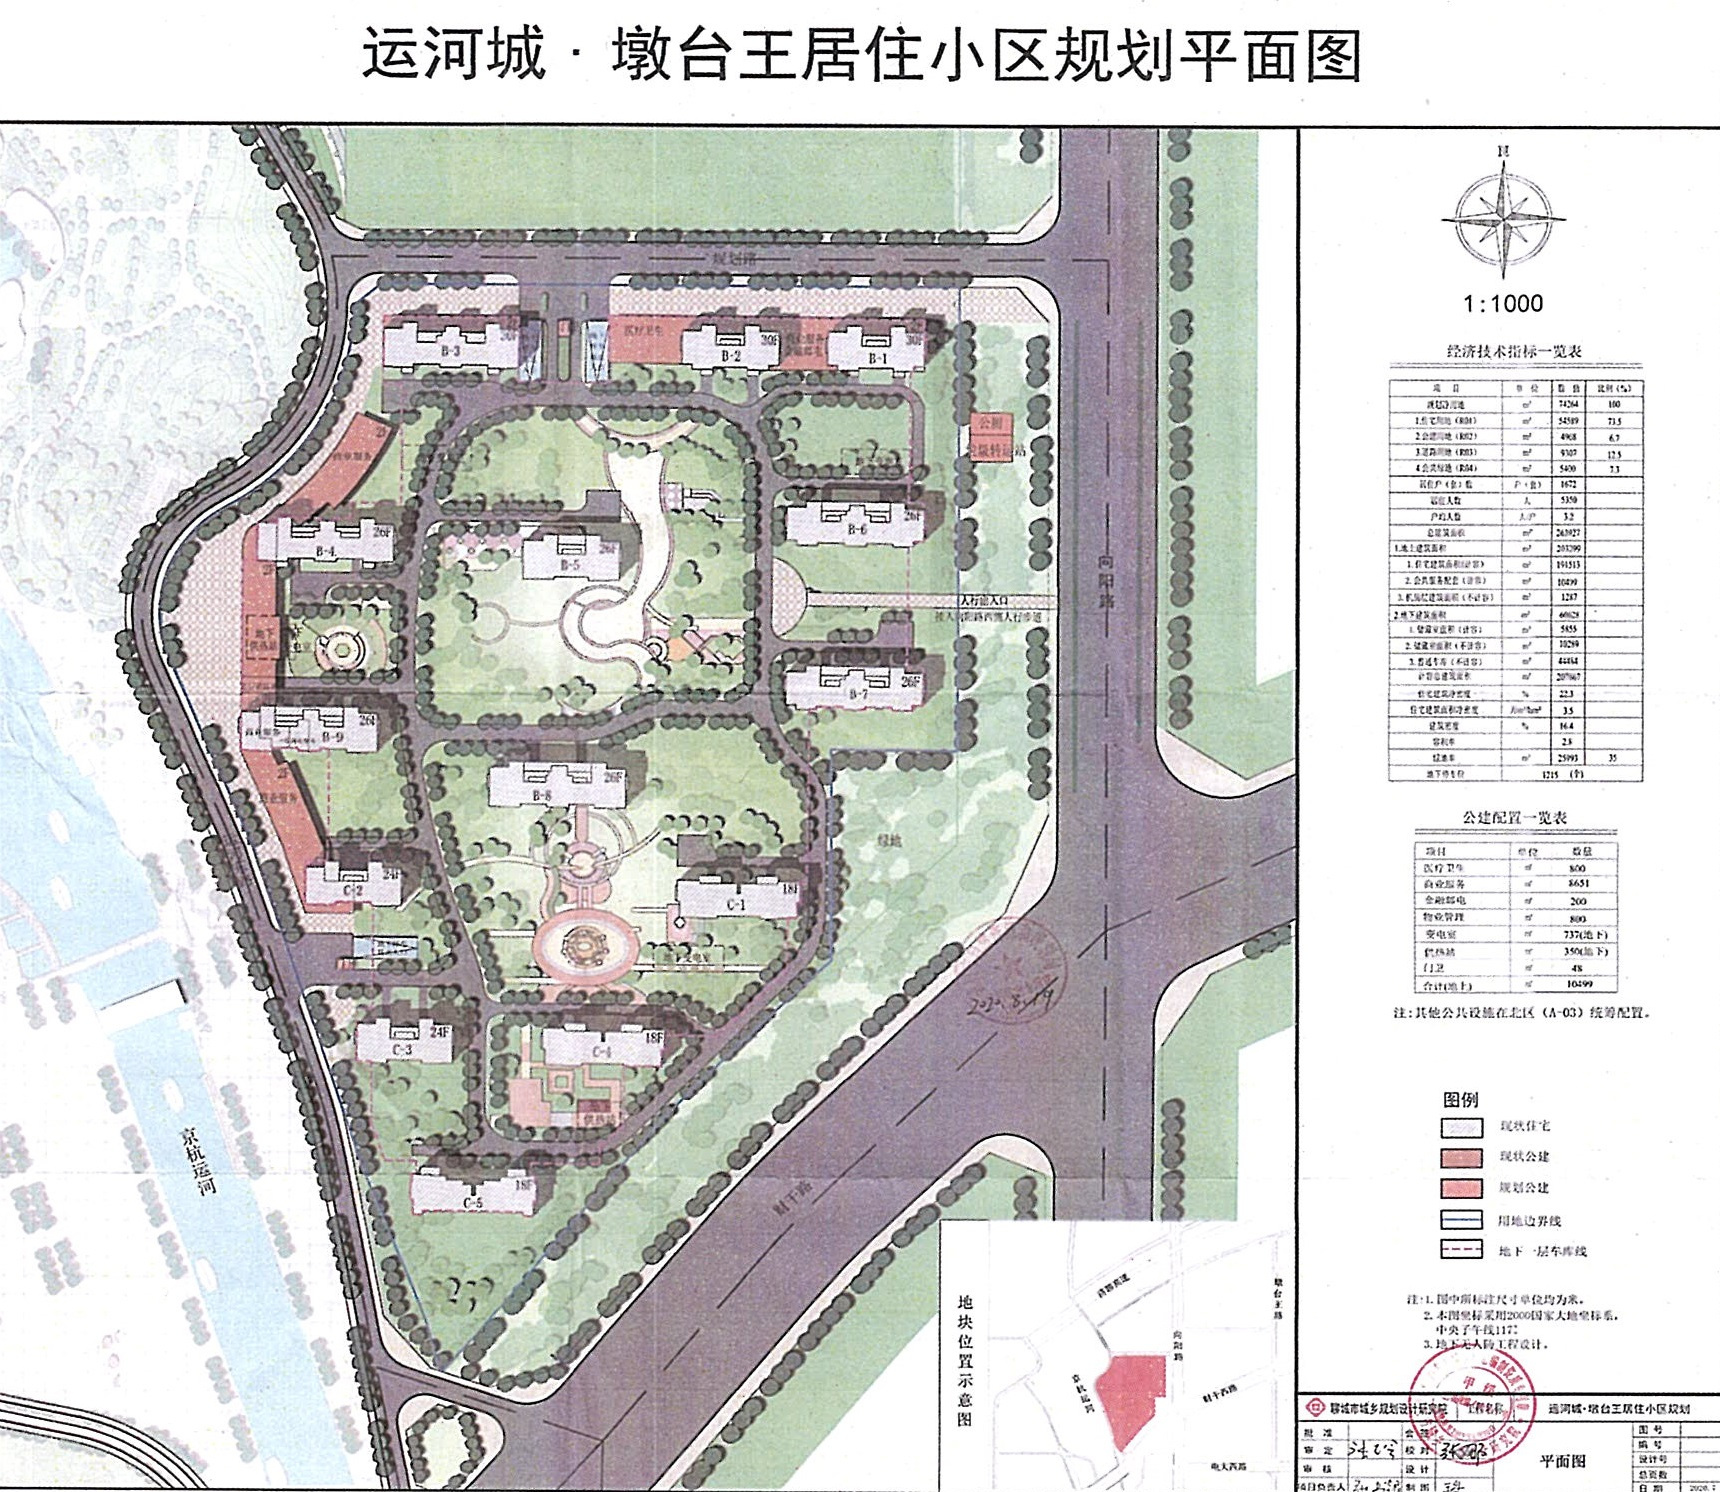 关于运河城·墩台王居住小区项目建设工程规划许可证的许可前公告